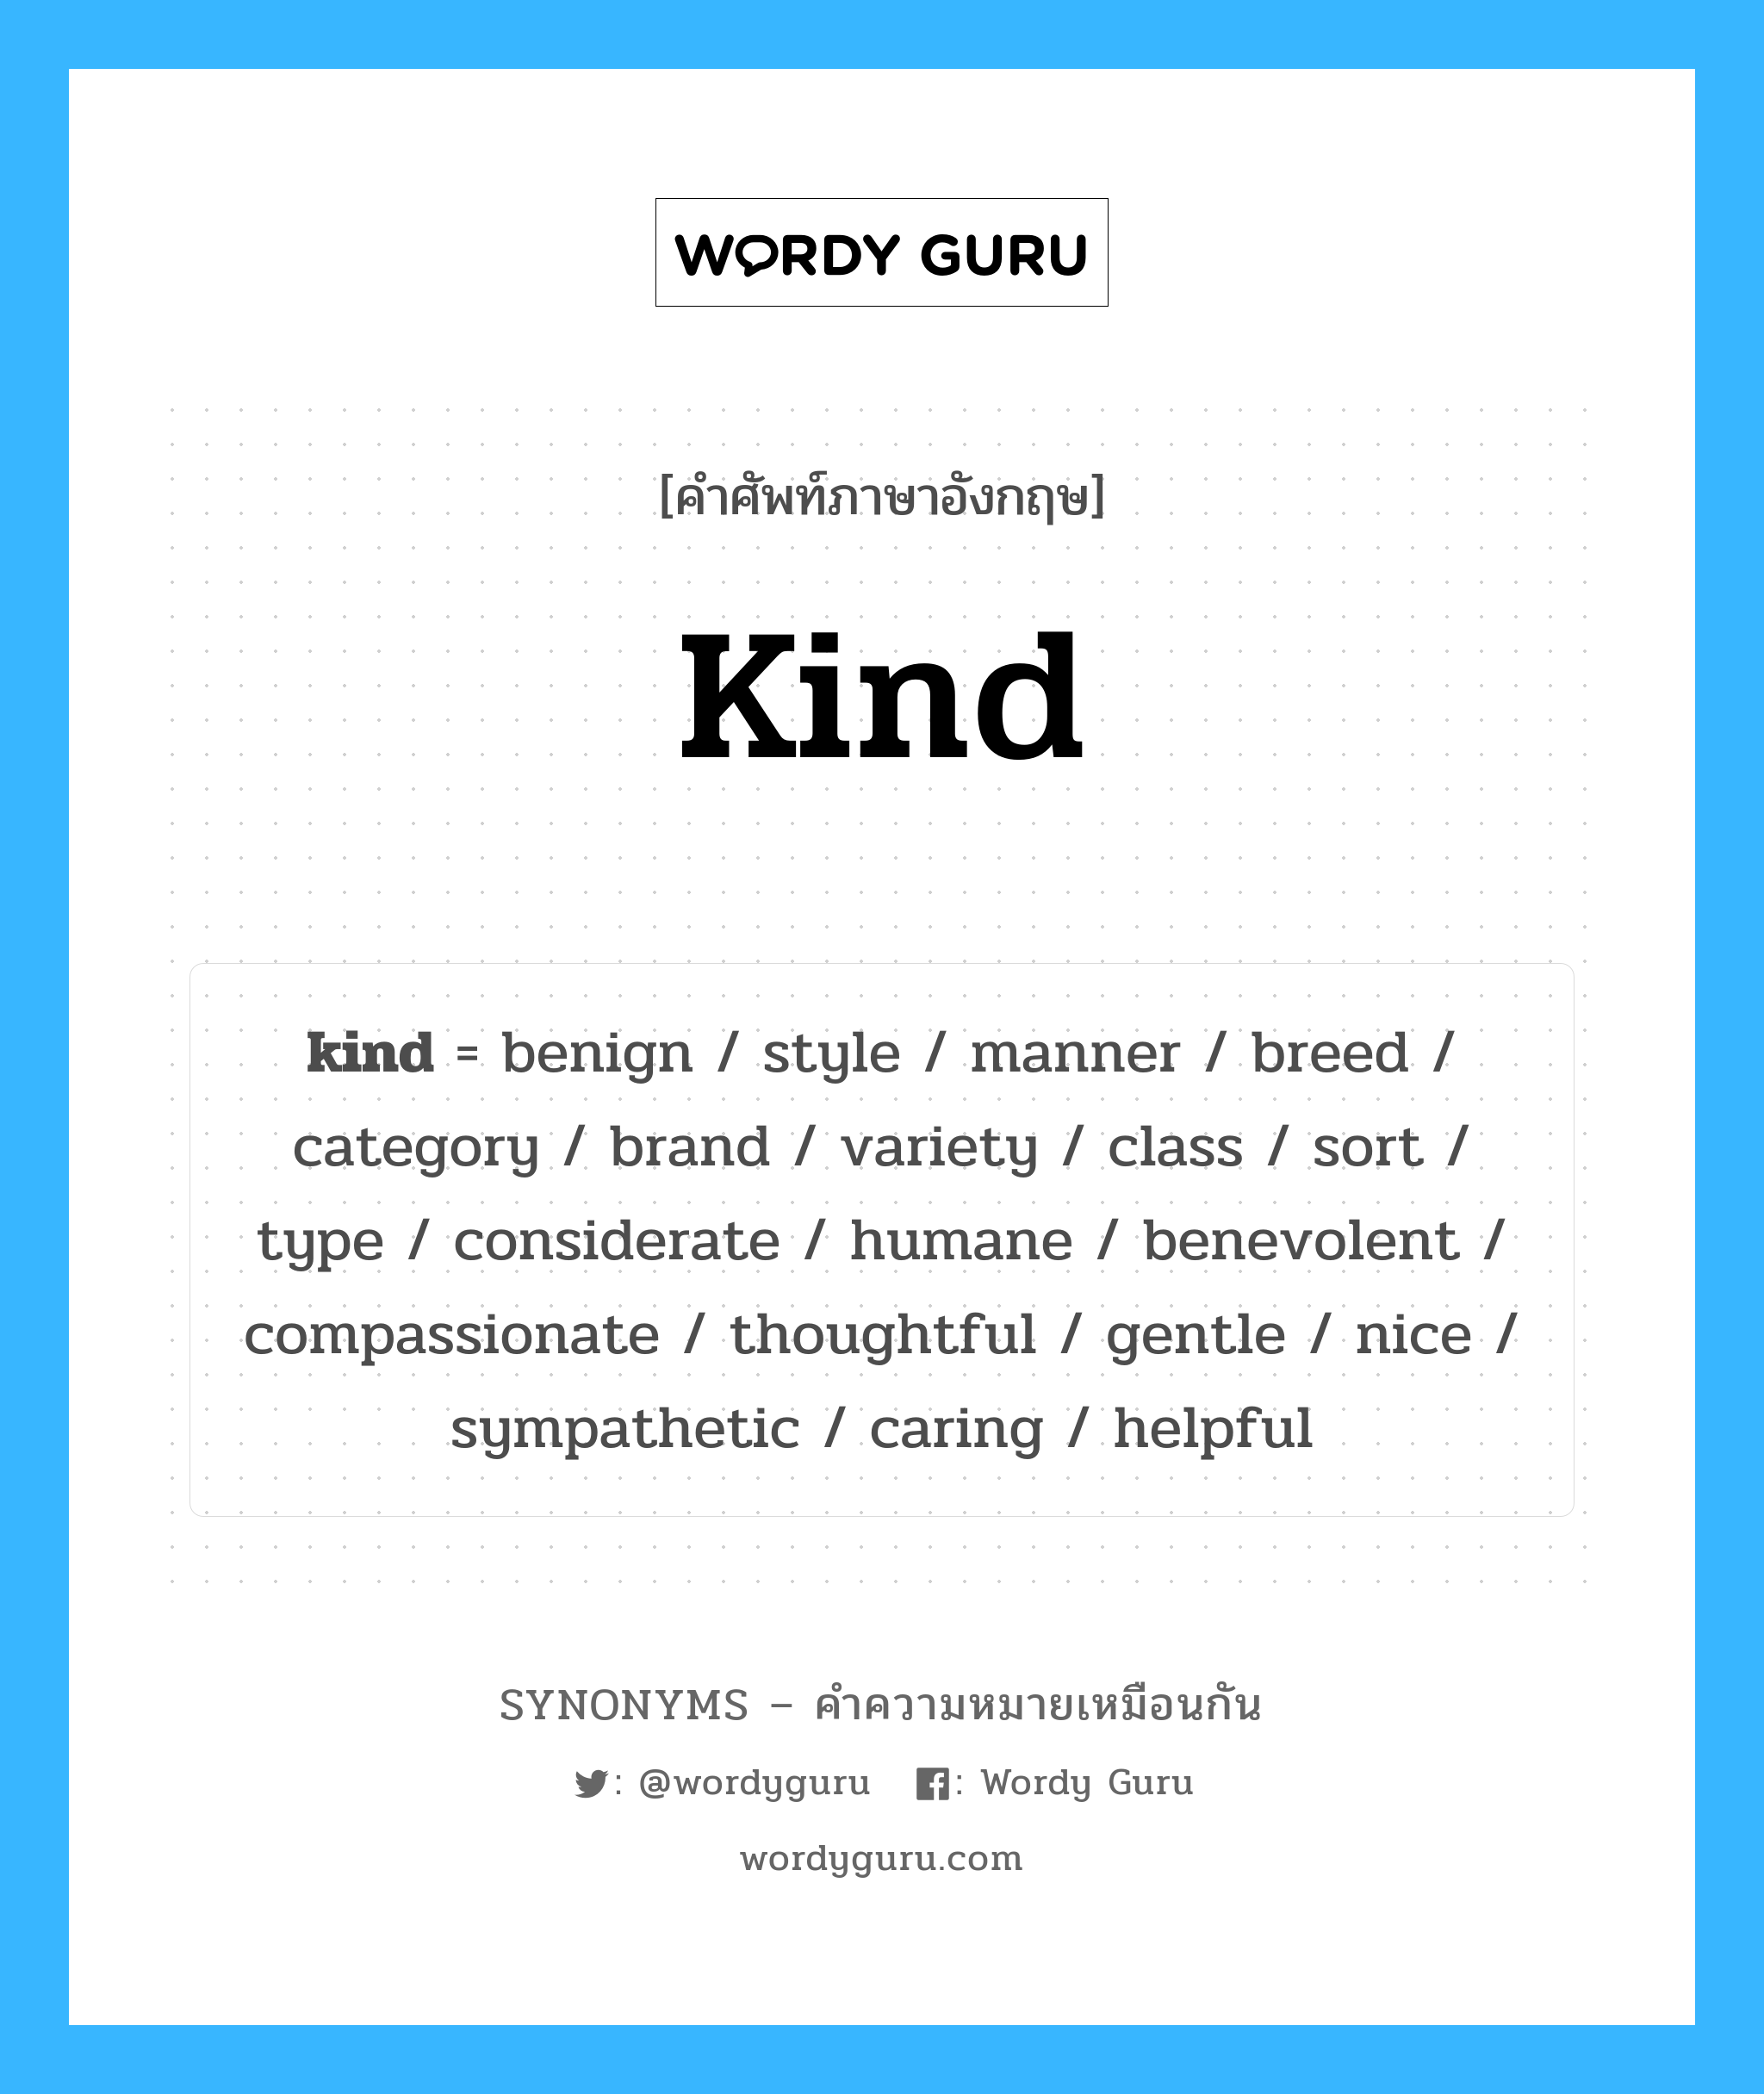 humane เป็นหนึ่งใน kind และมีคำอื่น ๆ อีกดังนี้, คำศัพท์ภาษาอังกฤษ humane ความหมายคล้ายกันกับ kind แปลว่า มีมนุษยธรรม หมวด kind